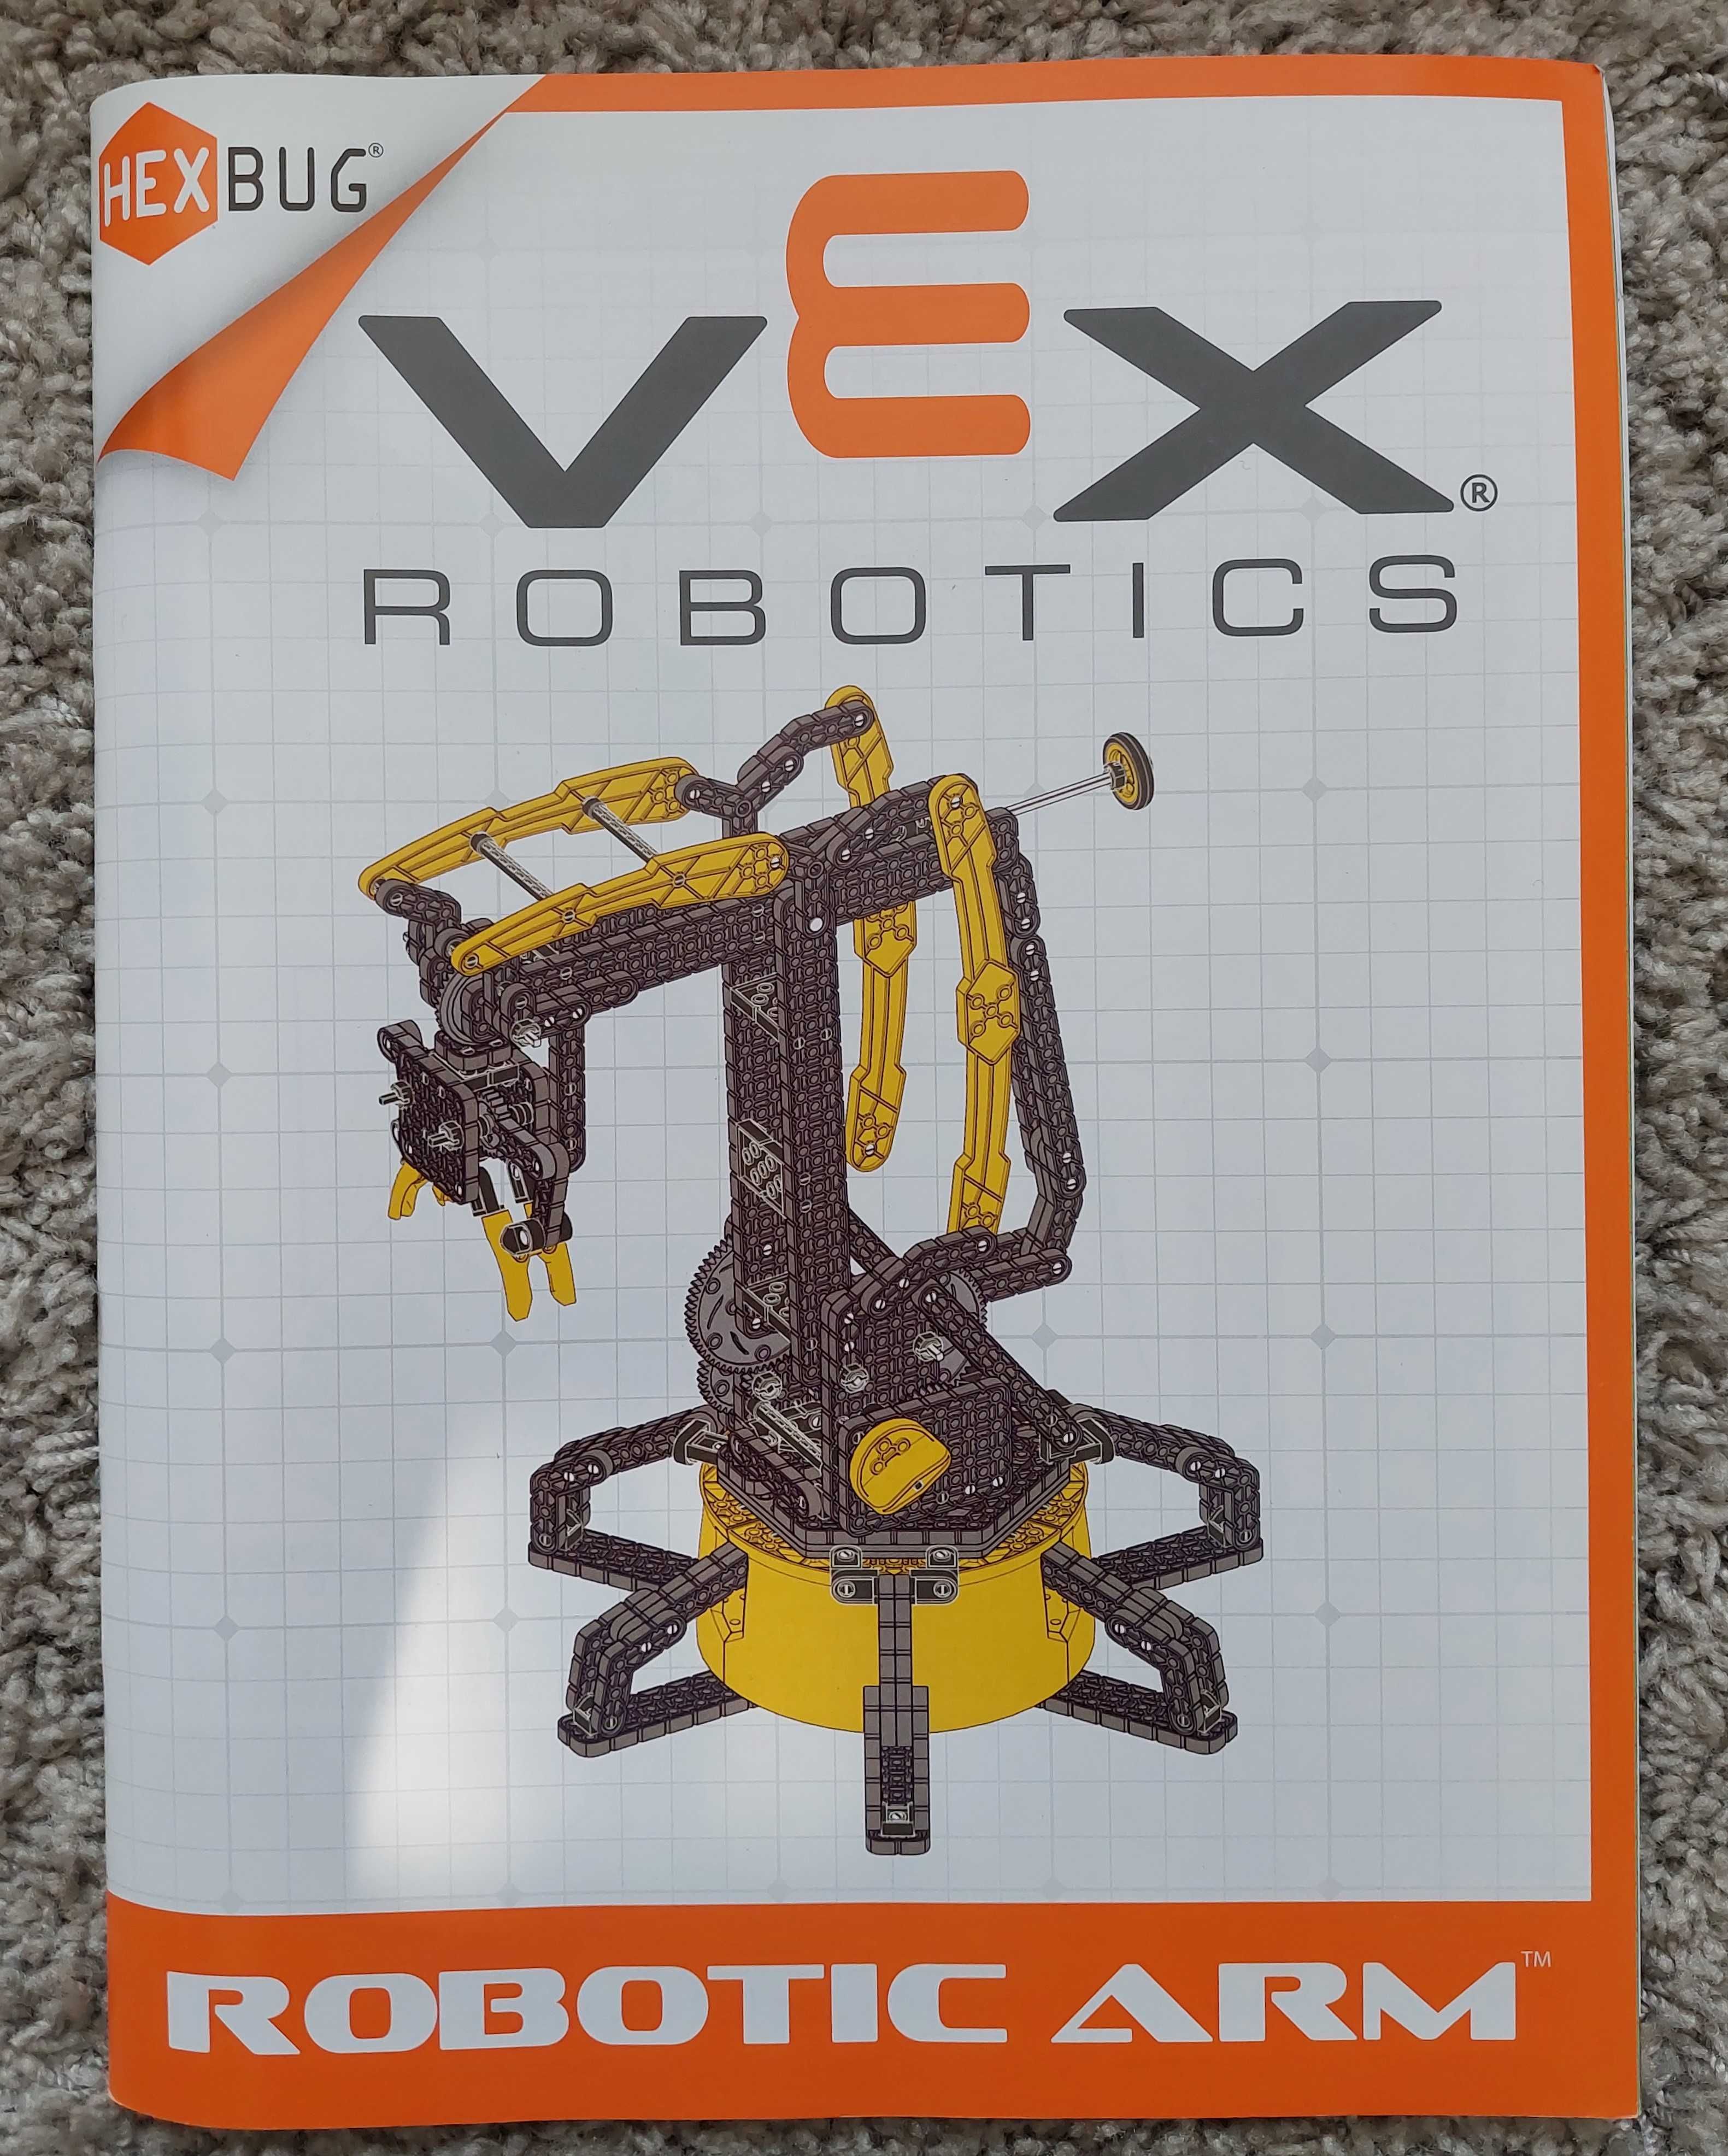 HexBug VEX Robotics Ramię robota (Robotic Arm) + GRATIS